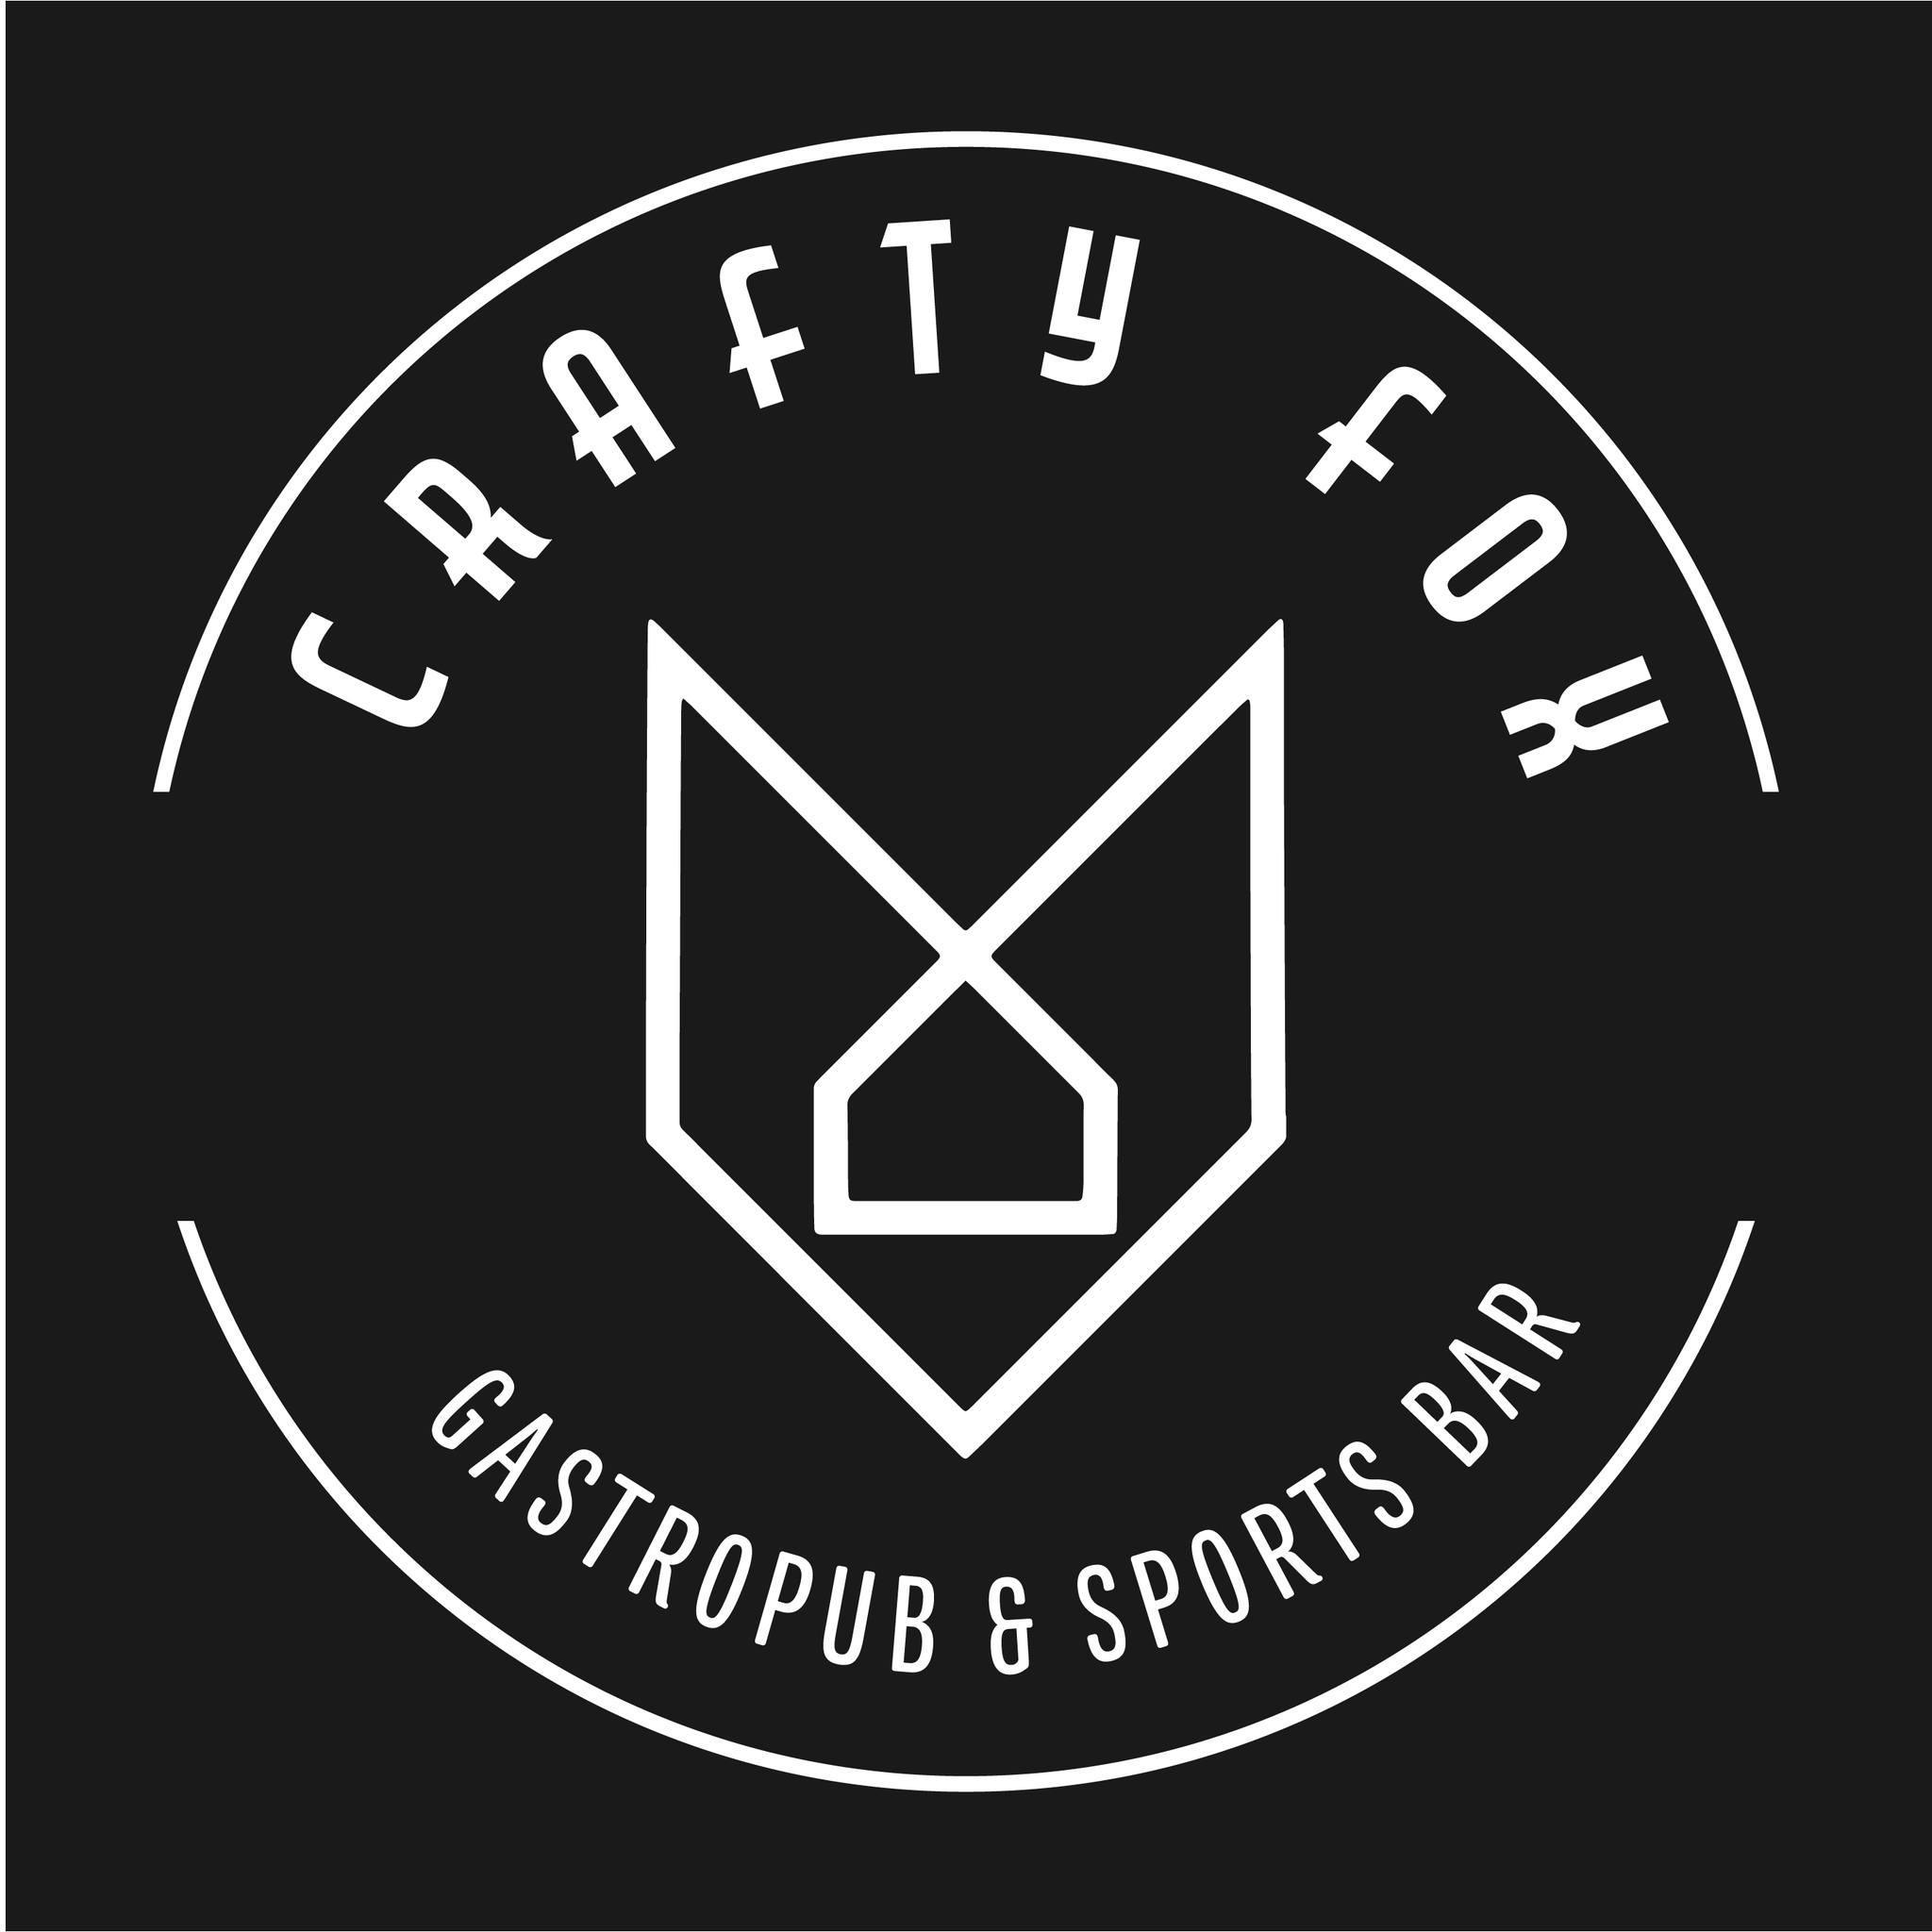 Crafty Fox: Gastropub & Sports Bar